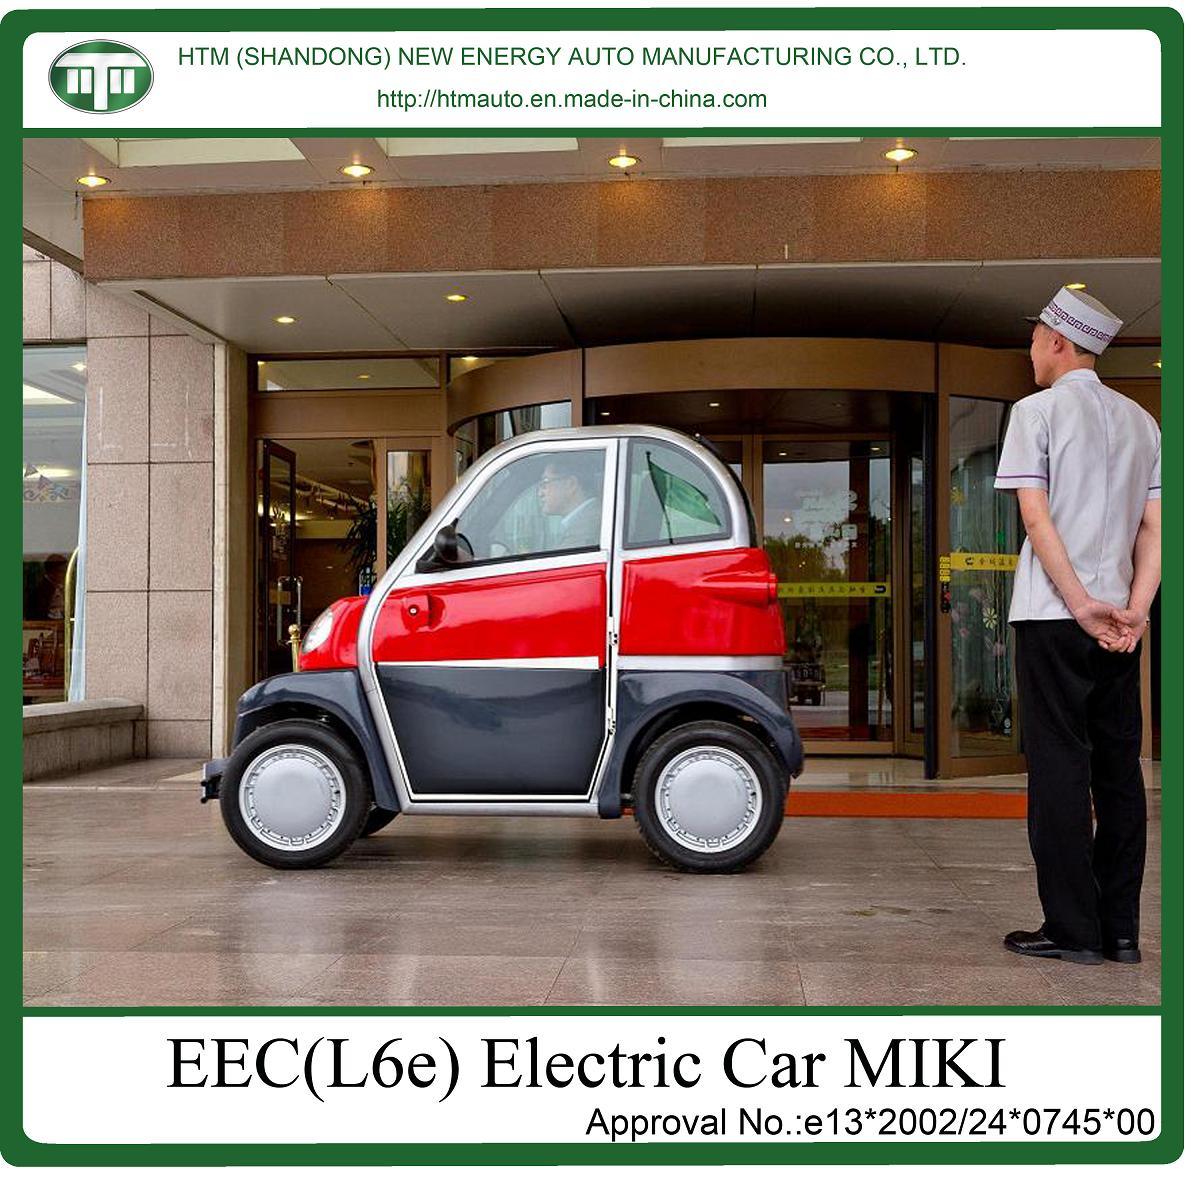 EEC Electric Cars (l6e)